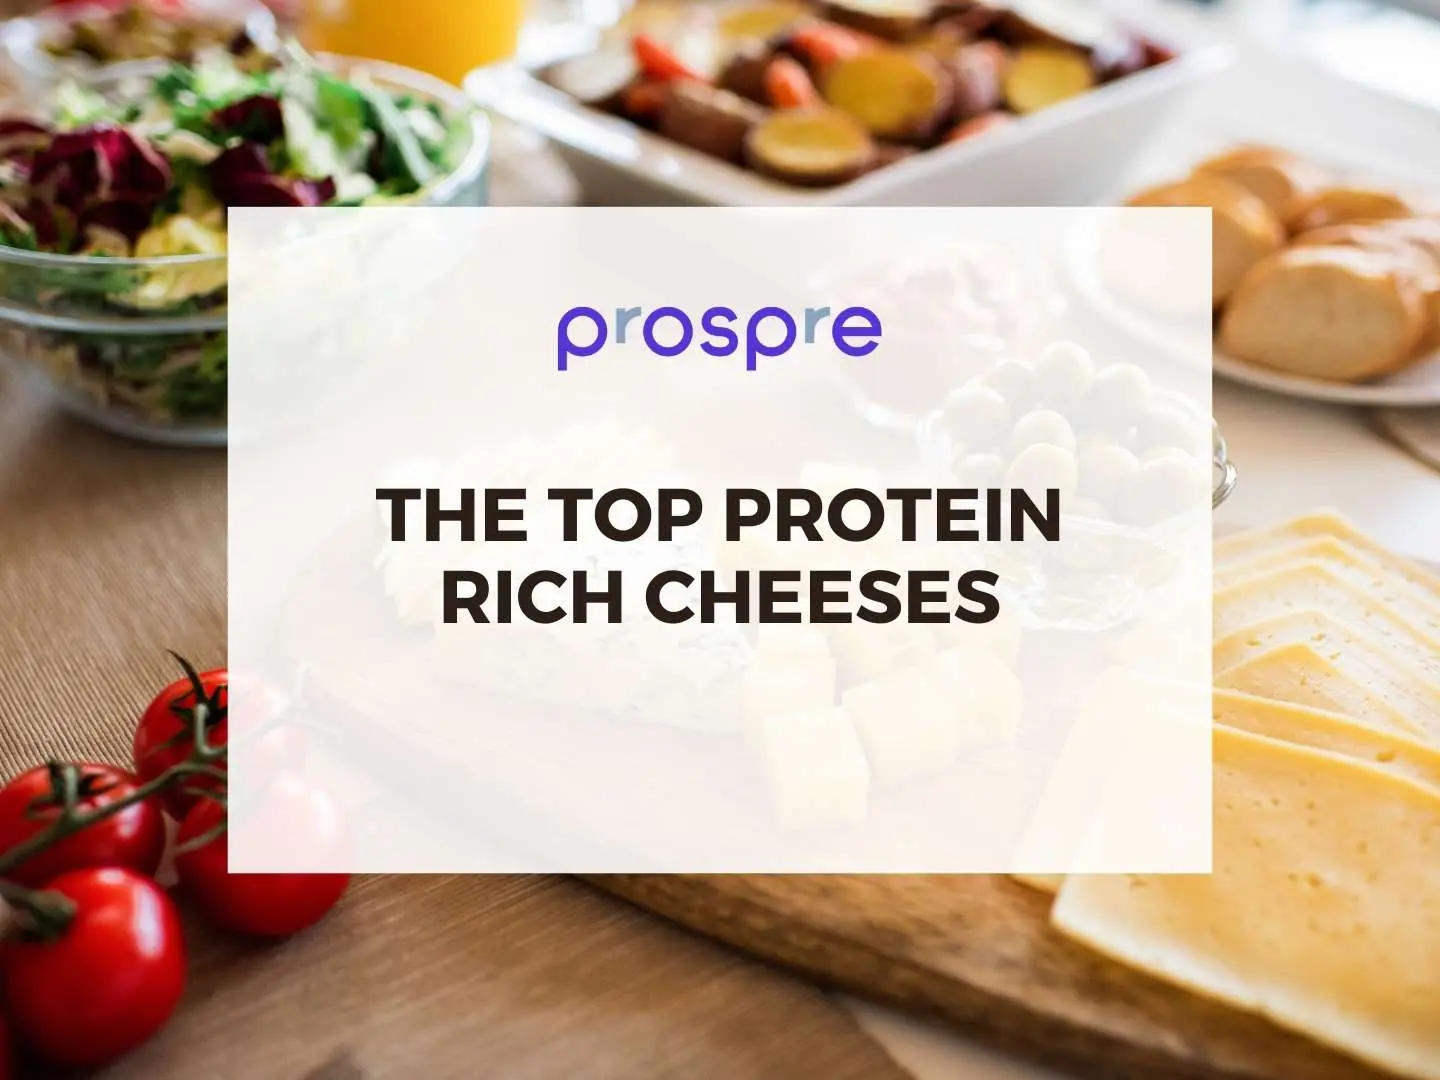 el queso es proteína o carbohidrato - Cuál es el queso que tiene más proteína